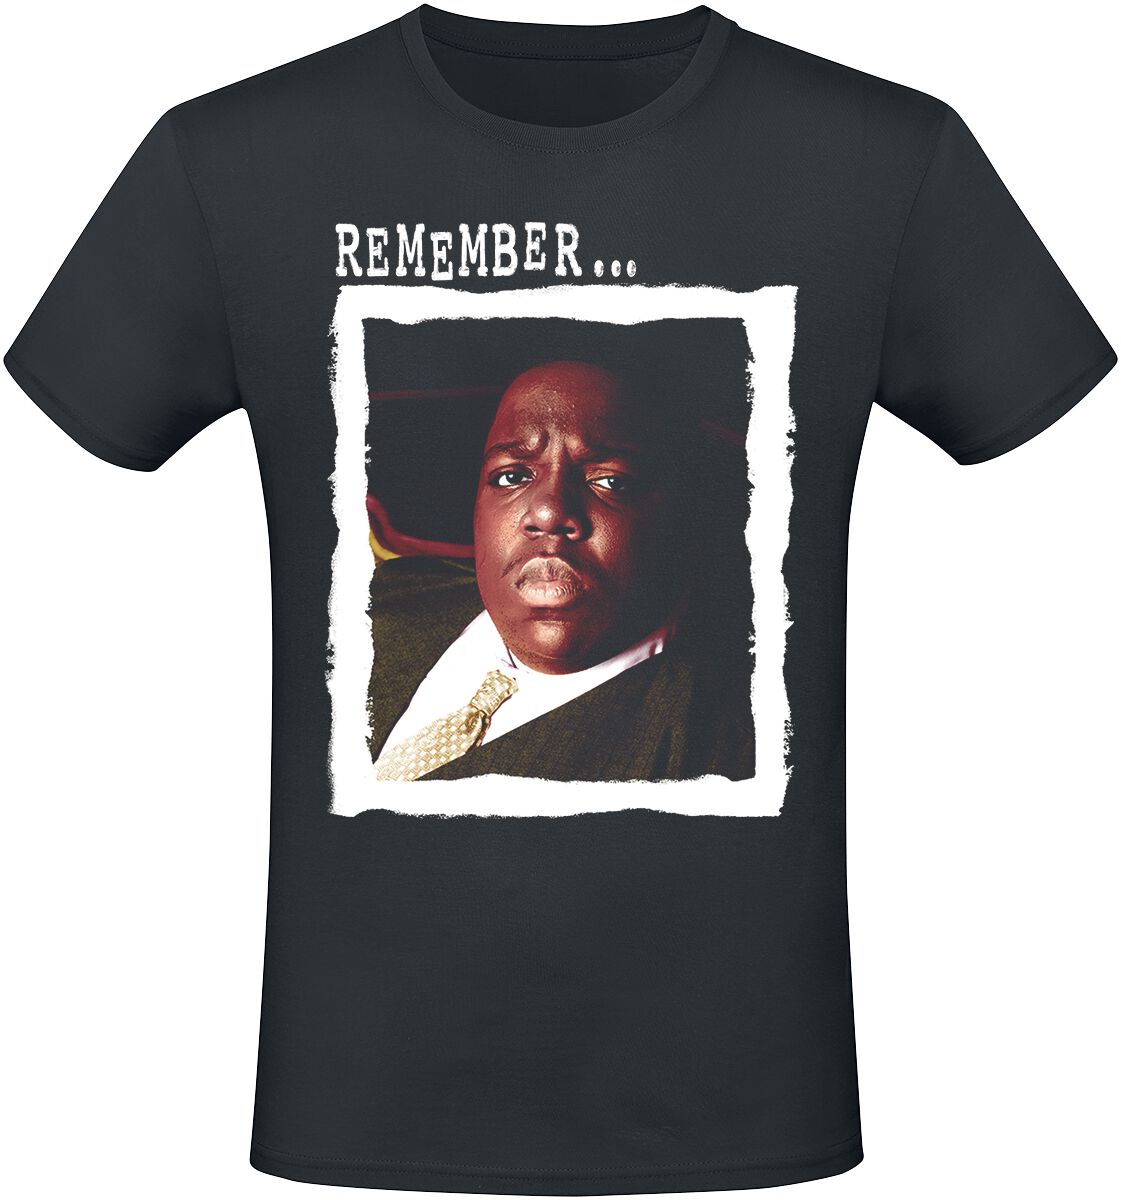 Notorious B.I.G. T-Shirt - Remember - S bis XXL - für Männer - Größe M - schwarz  - Lizenziertes Merchandise!